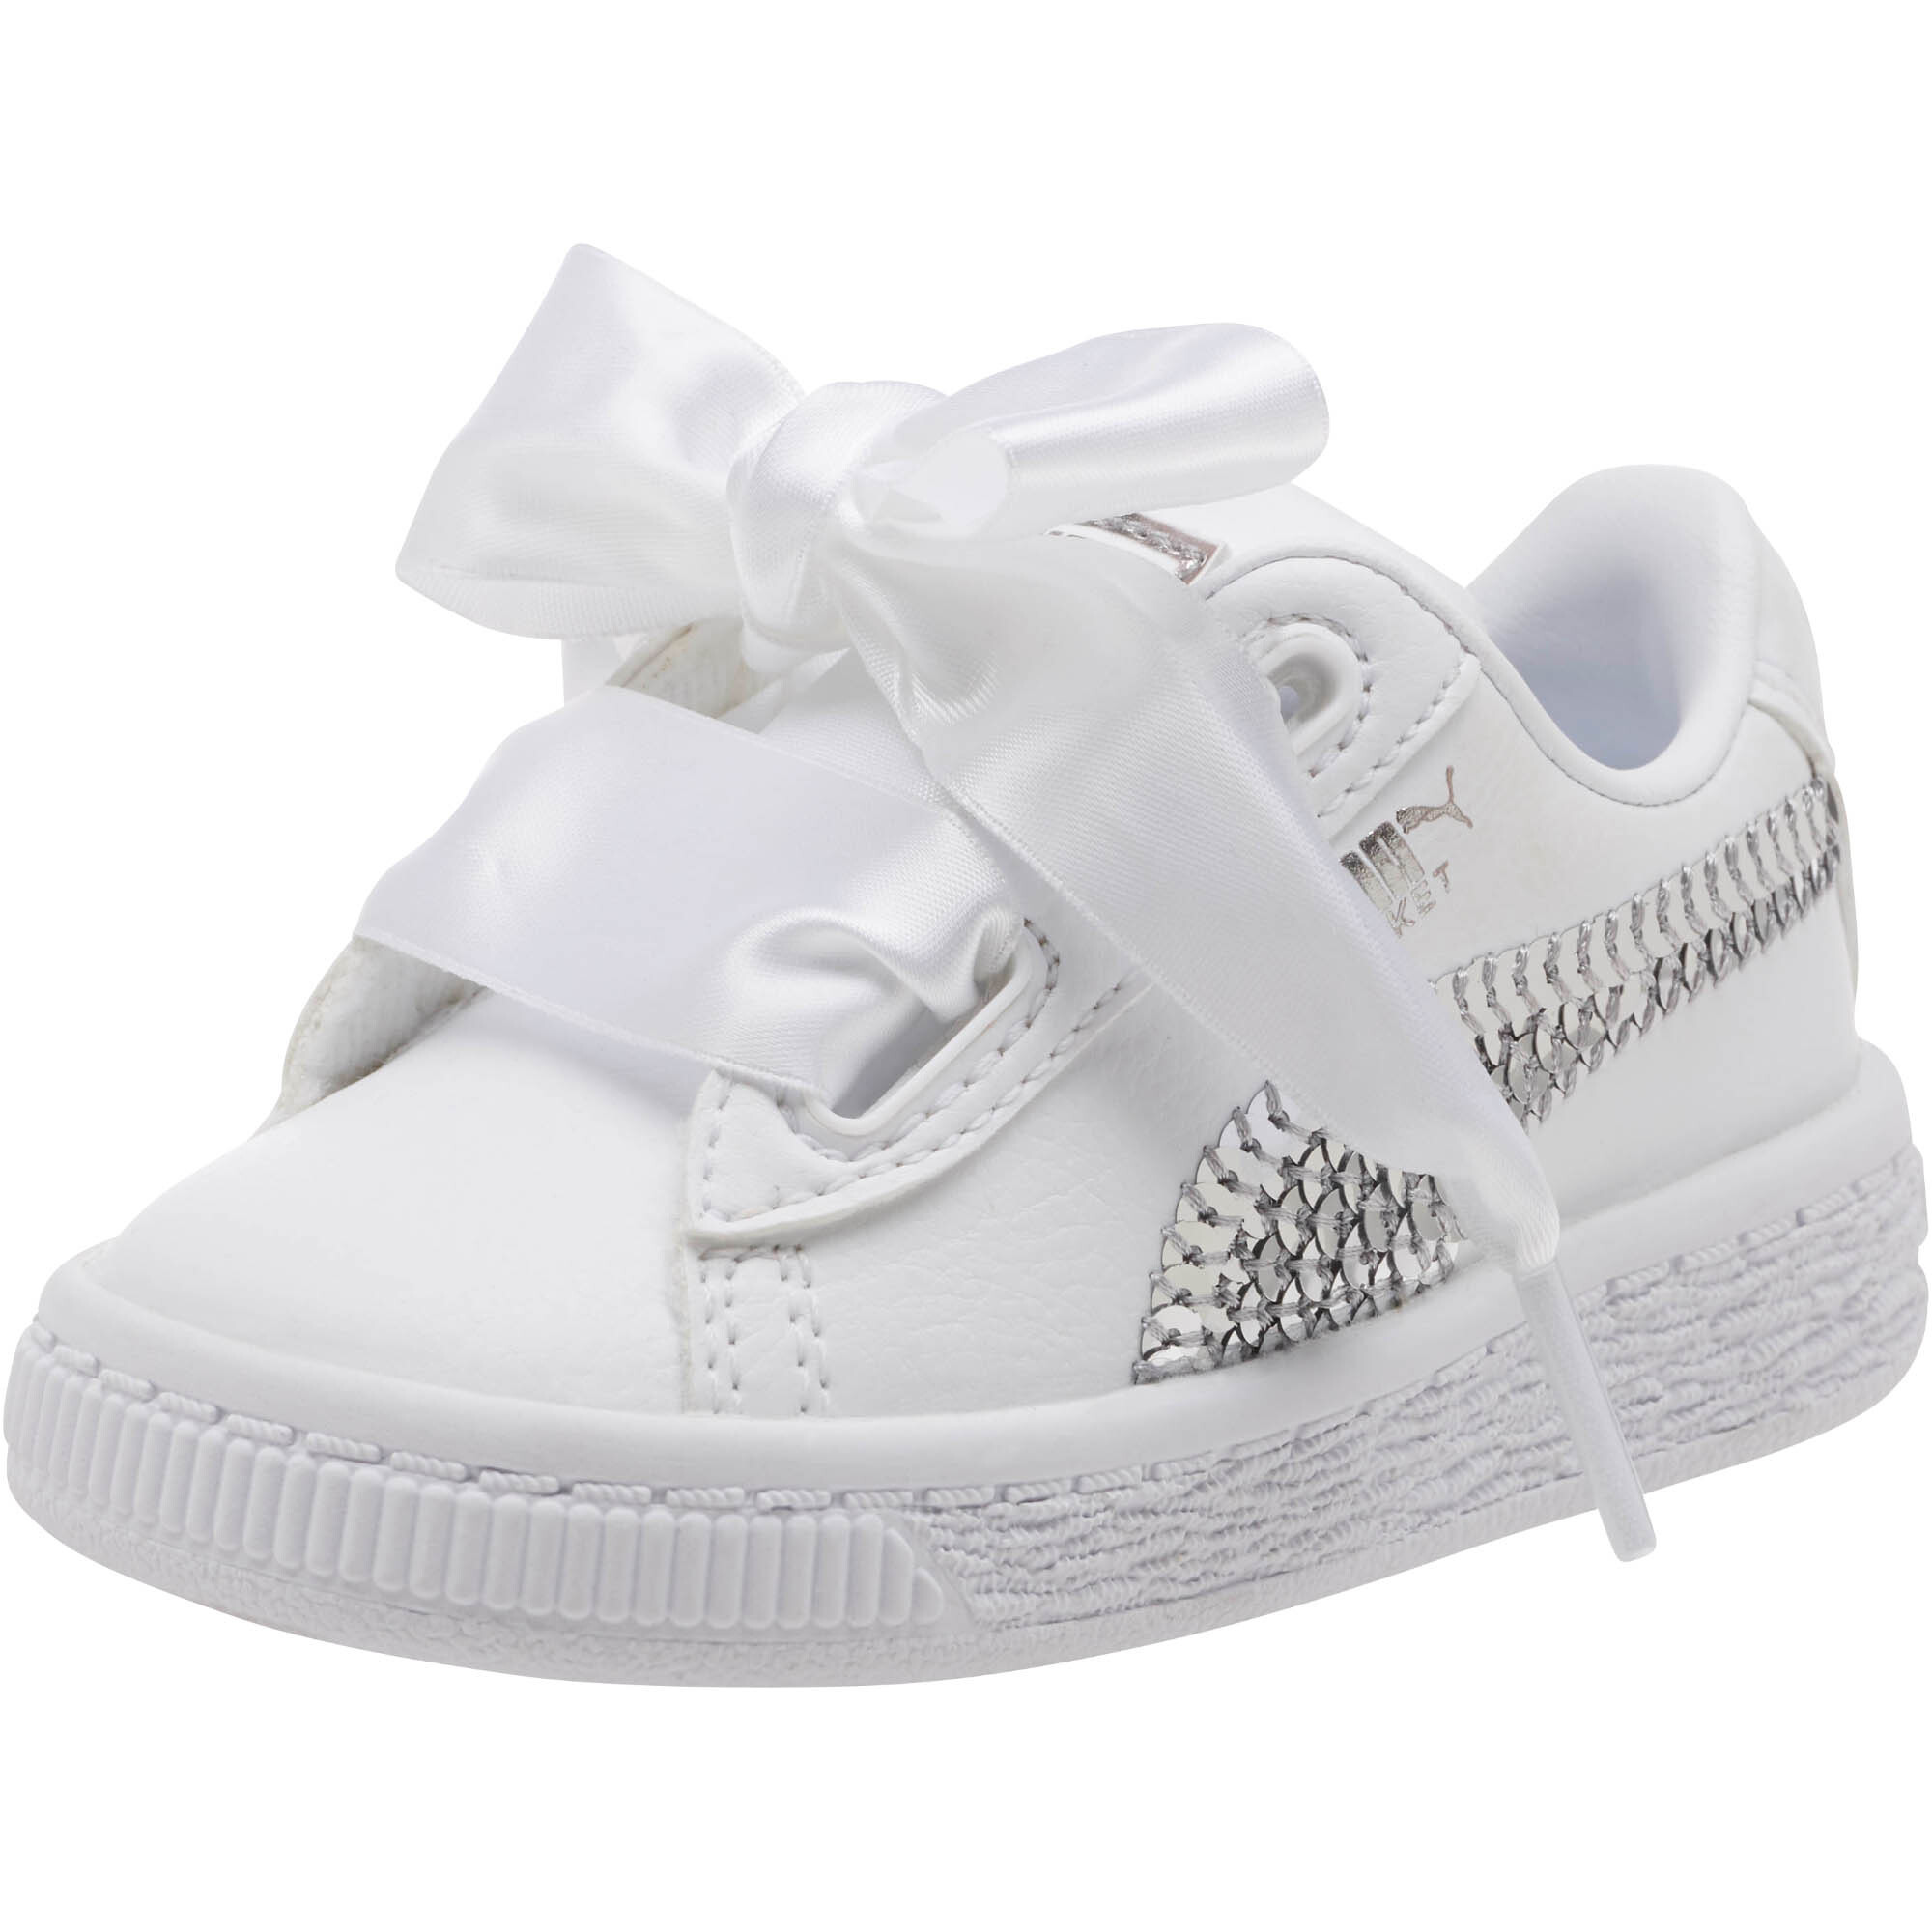 PUMA Basket Heart Bling Infant Sneakers Kids Shoe Kids | eBay